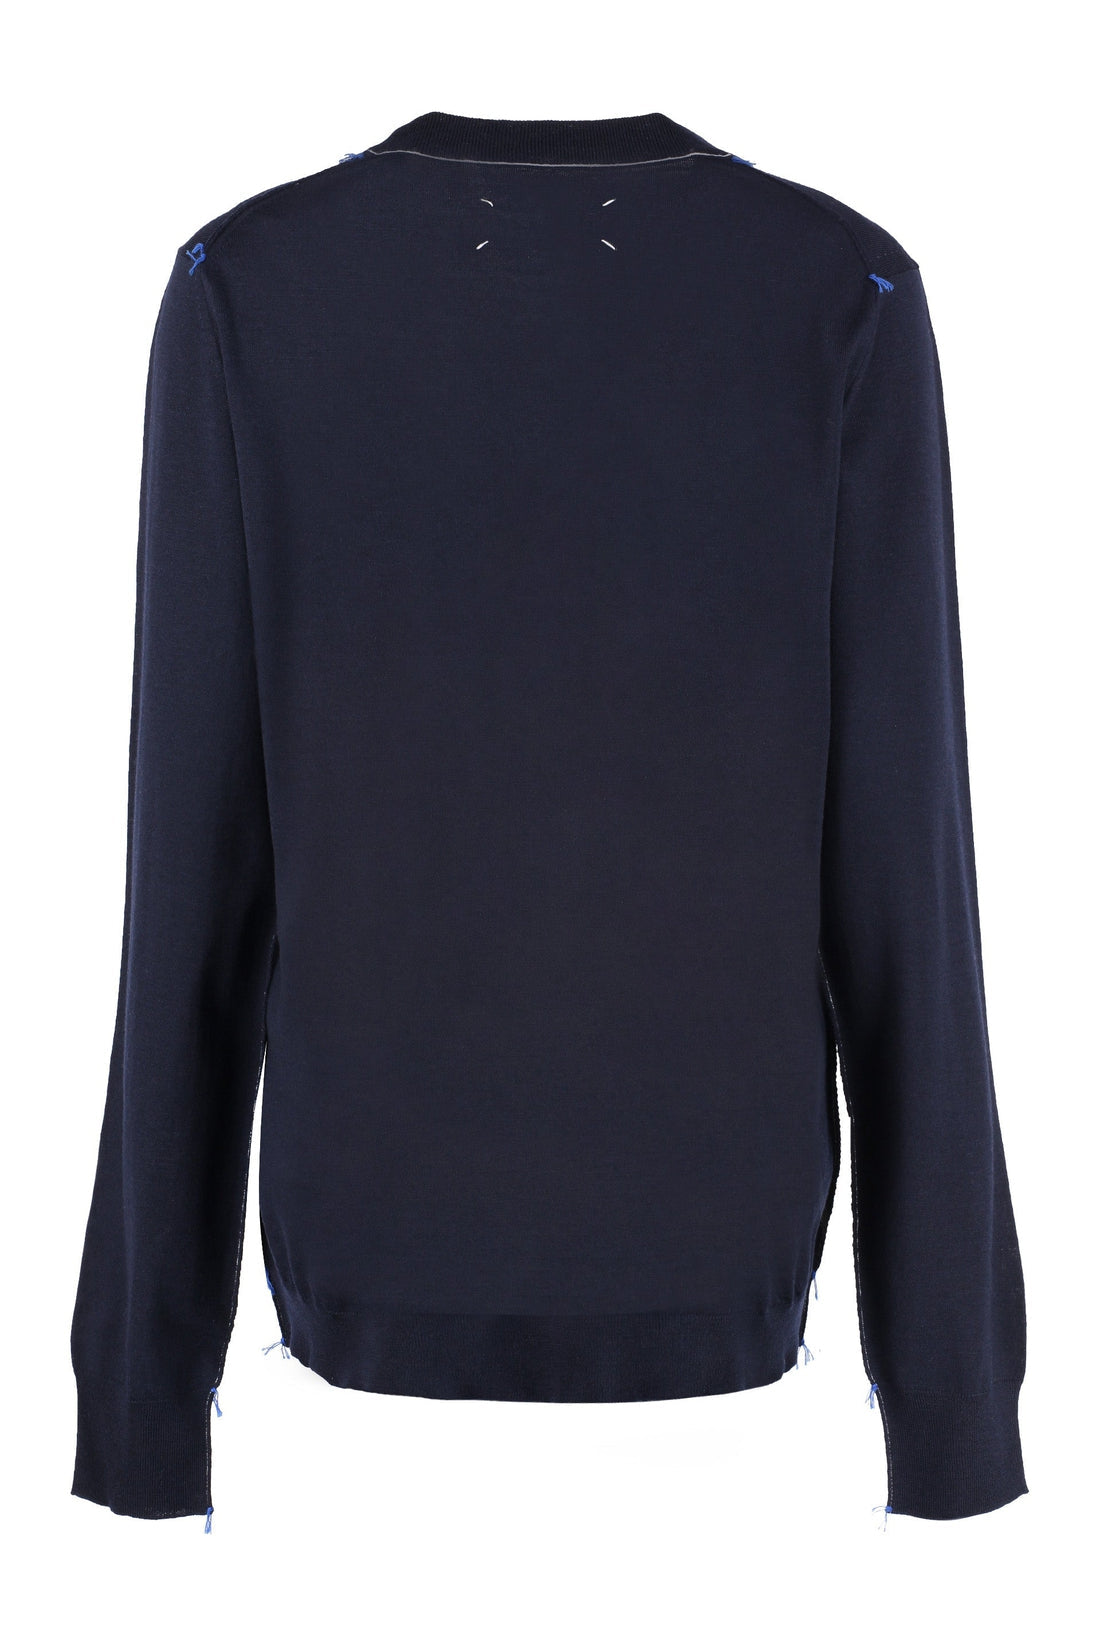 Maison Margiela-OUTLET-SALE-Wool-cotton blend crew-neck sweater-ARCHIVIST